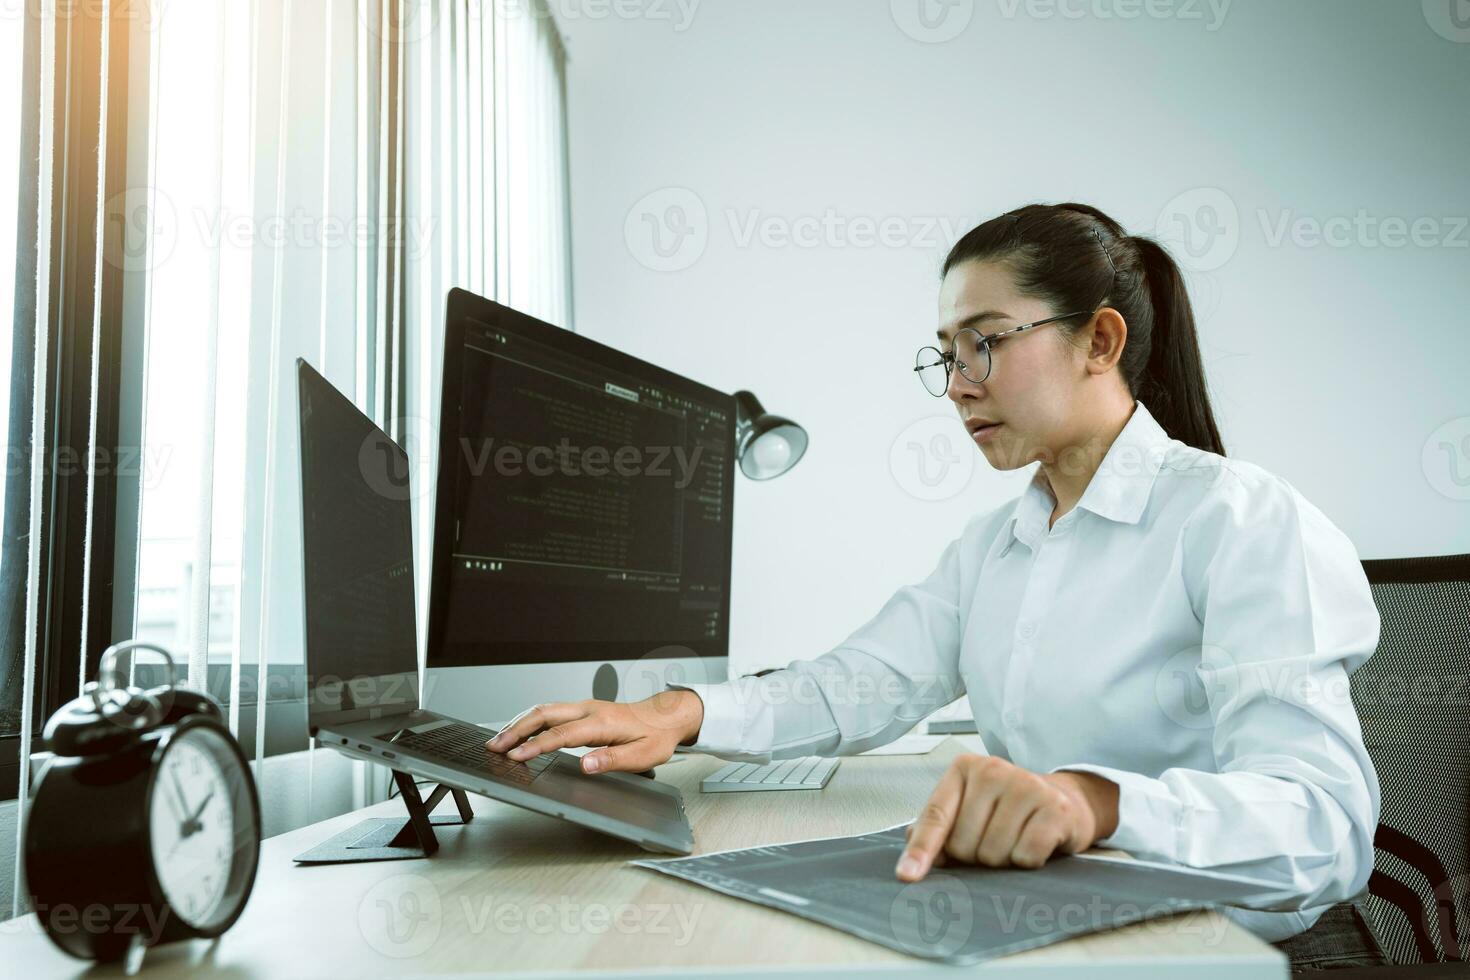 kvinnliga asiatiska mjukvaruutvecklare analyserar tillsammans om koden som skrivits in i programmet på datorn i kontorsrummet. foto